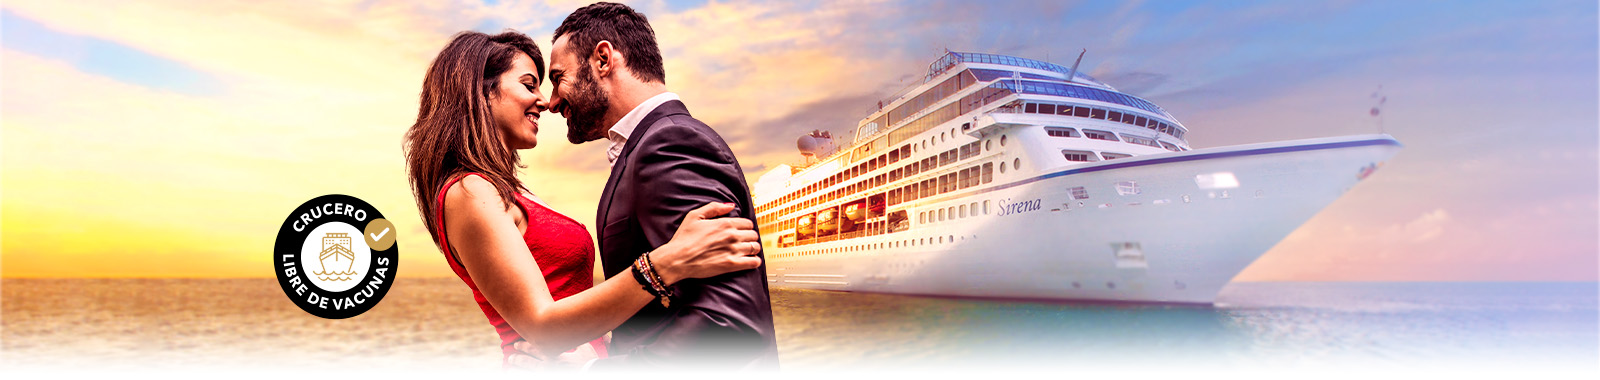 Desire Rome - Barcelona  Cruise 2025